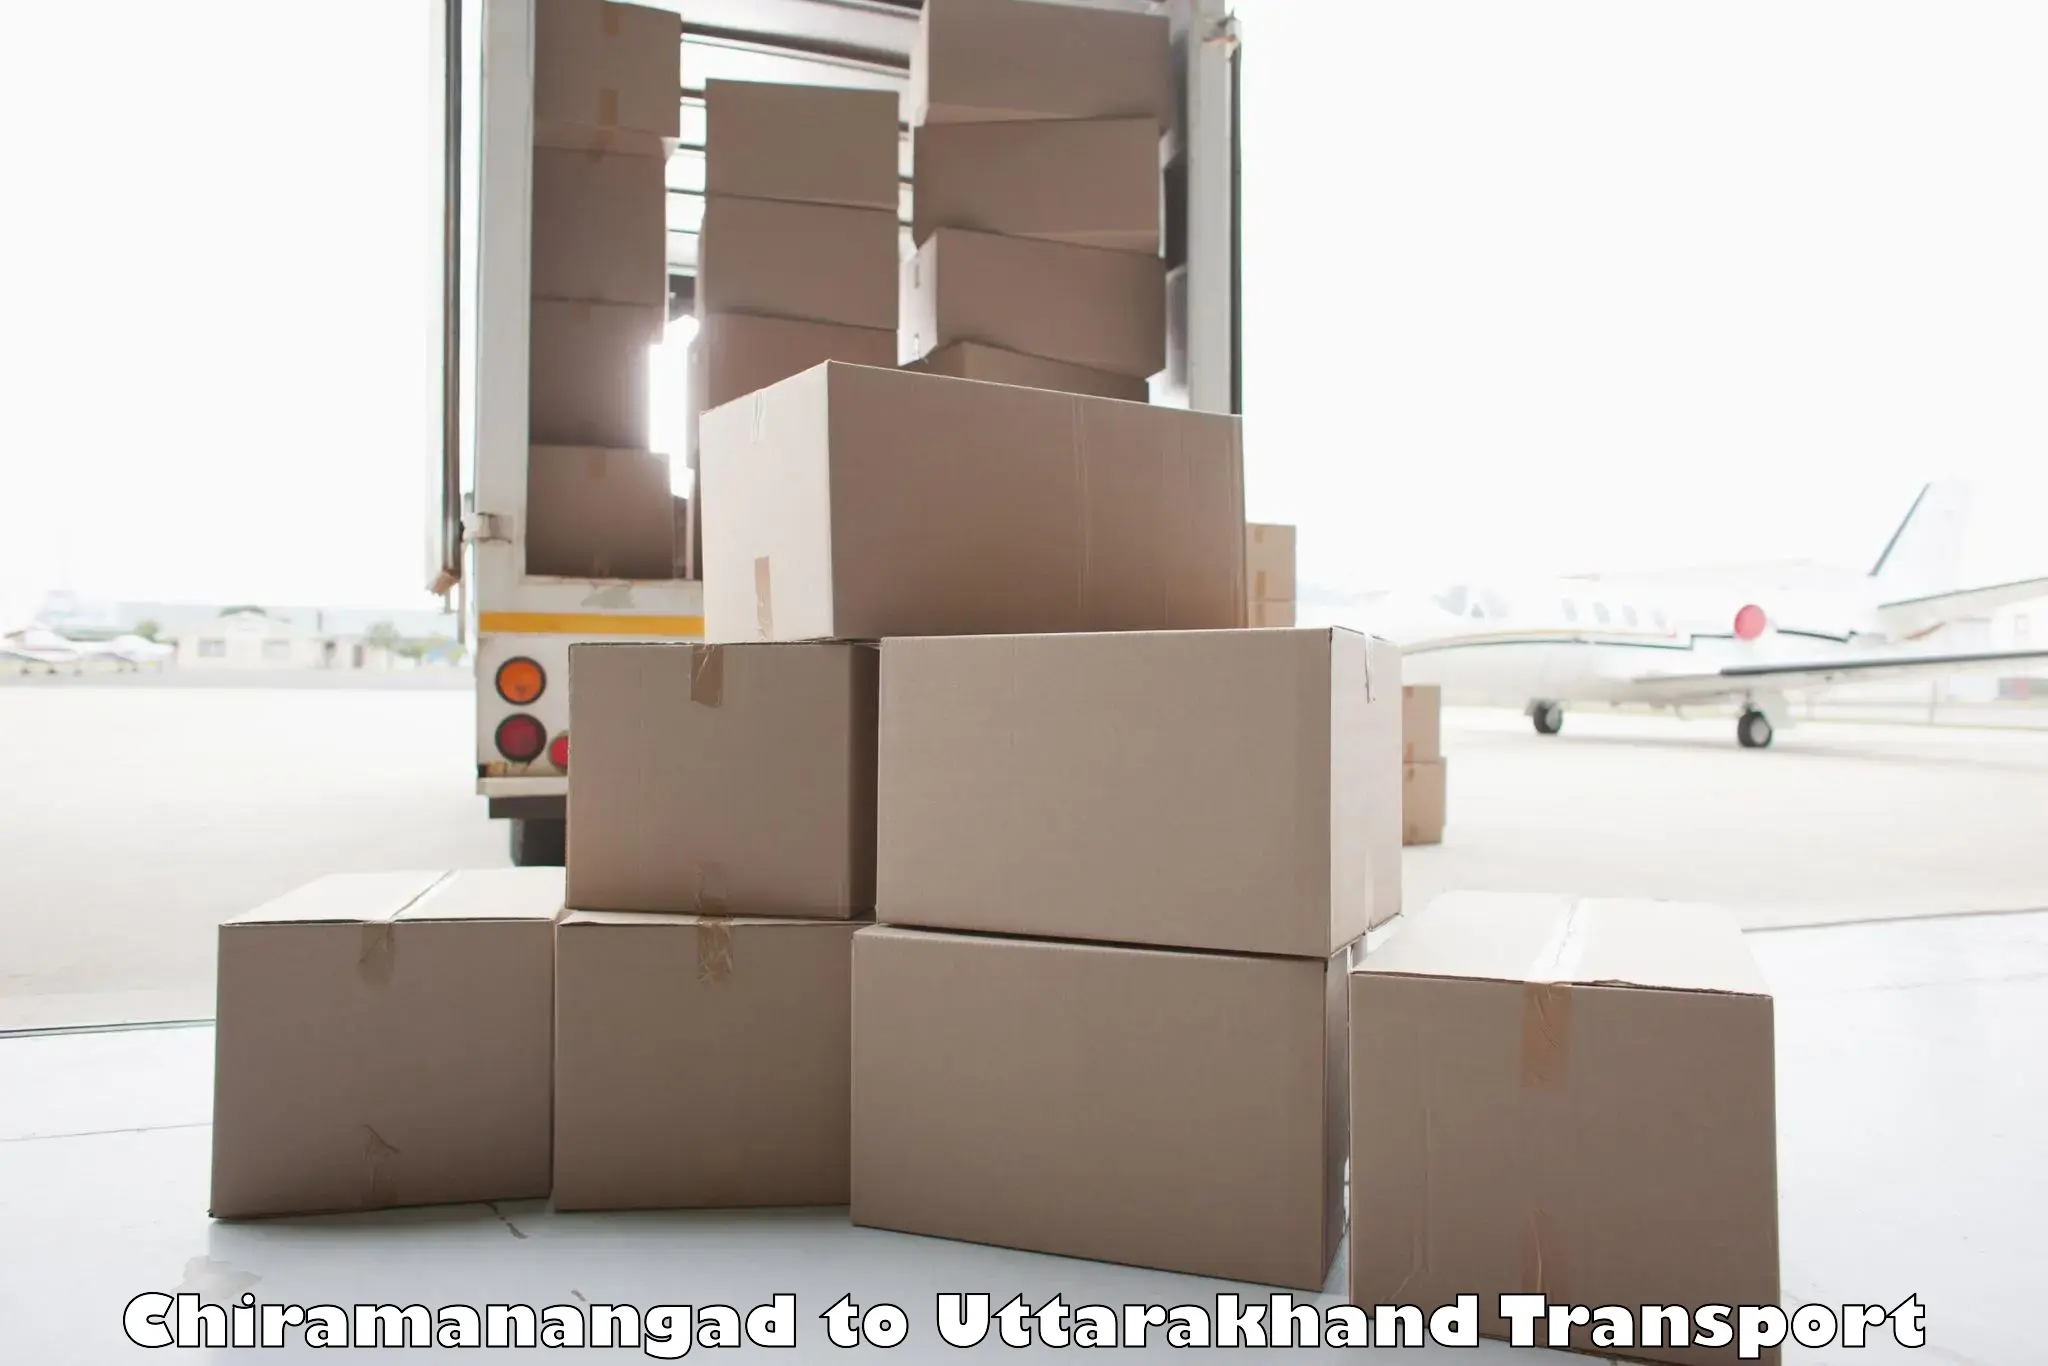 Pick up transport service Chiramanangad to Lansdowne